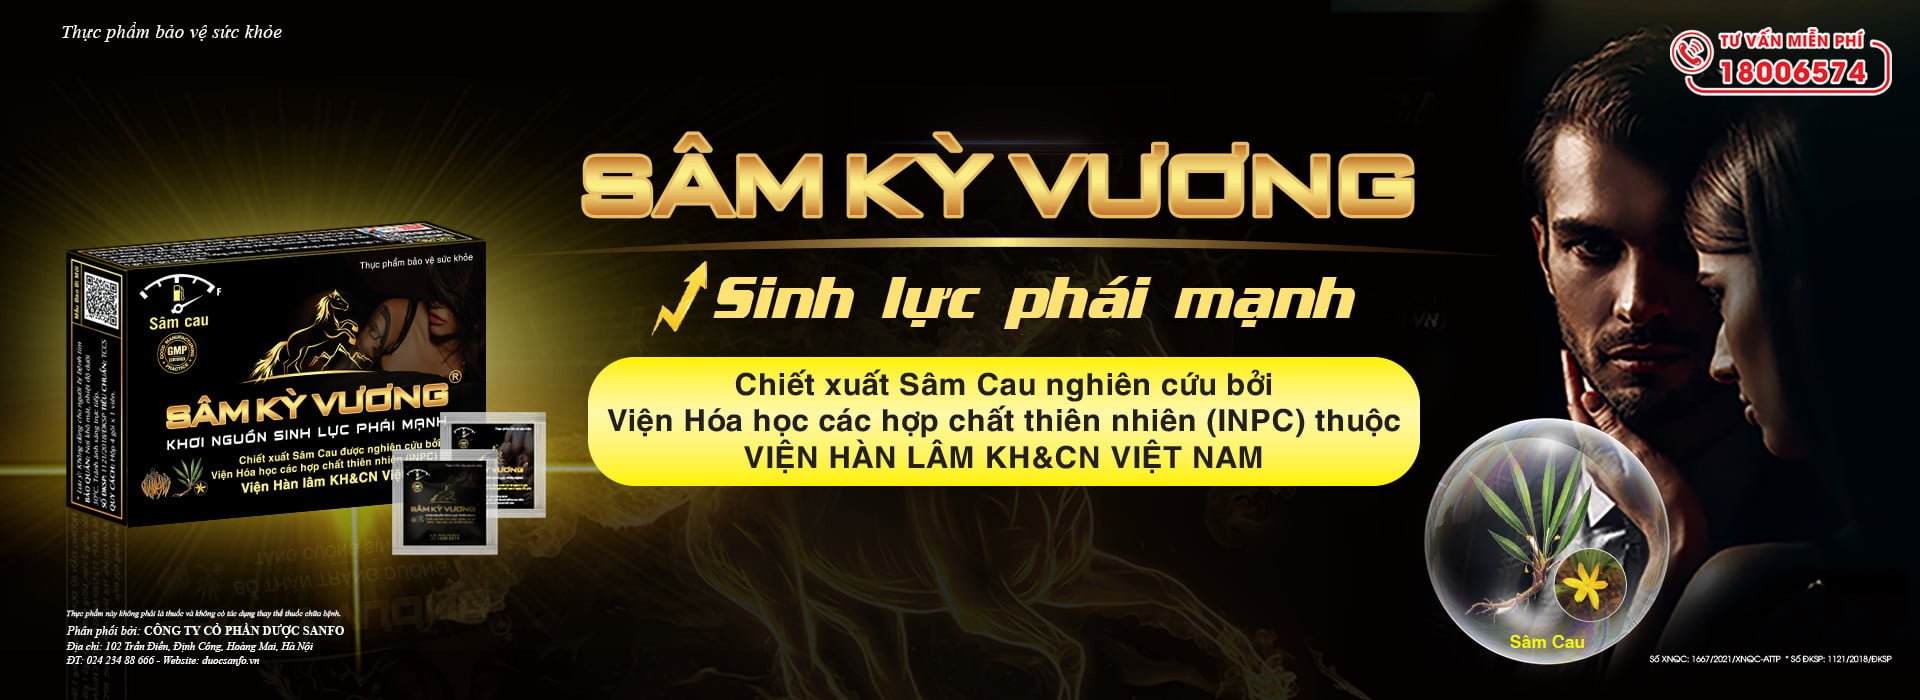 Độ dài trung bình cậu nhỏ Việt Nam là bao nhiêu?